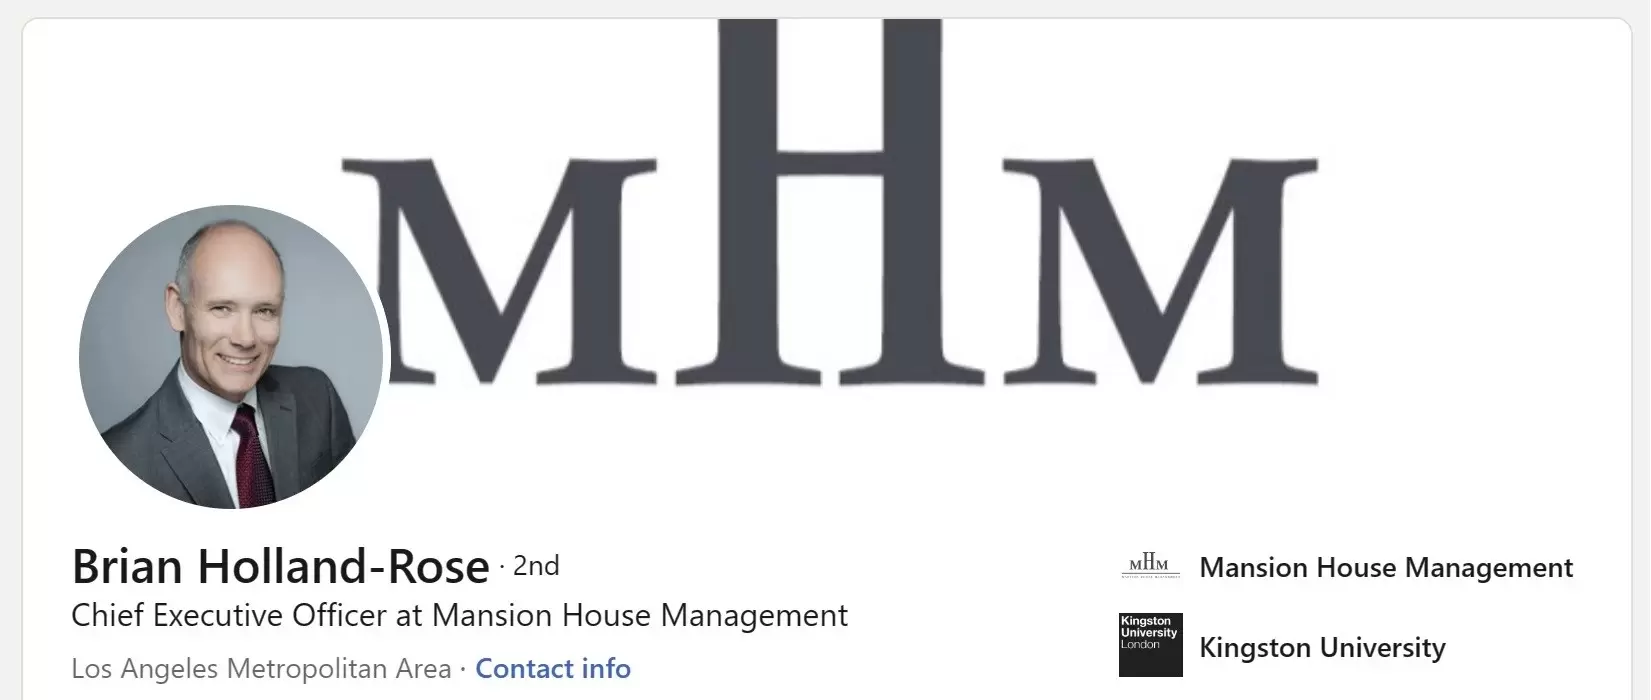 Mansion House Management on LinkedIn